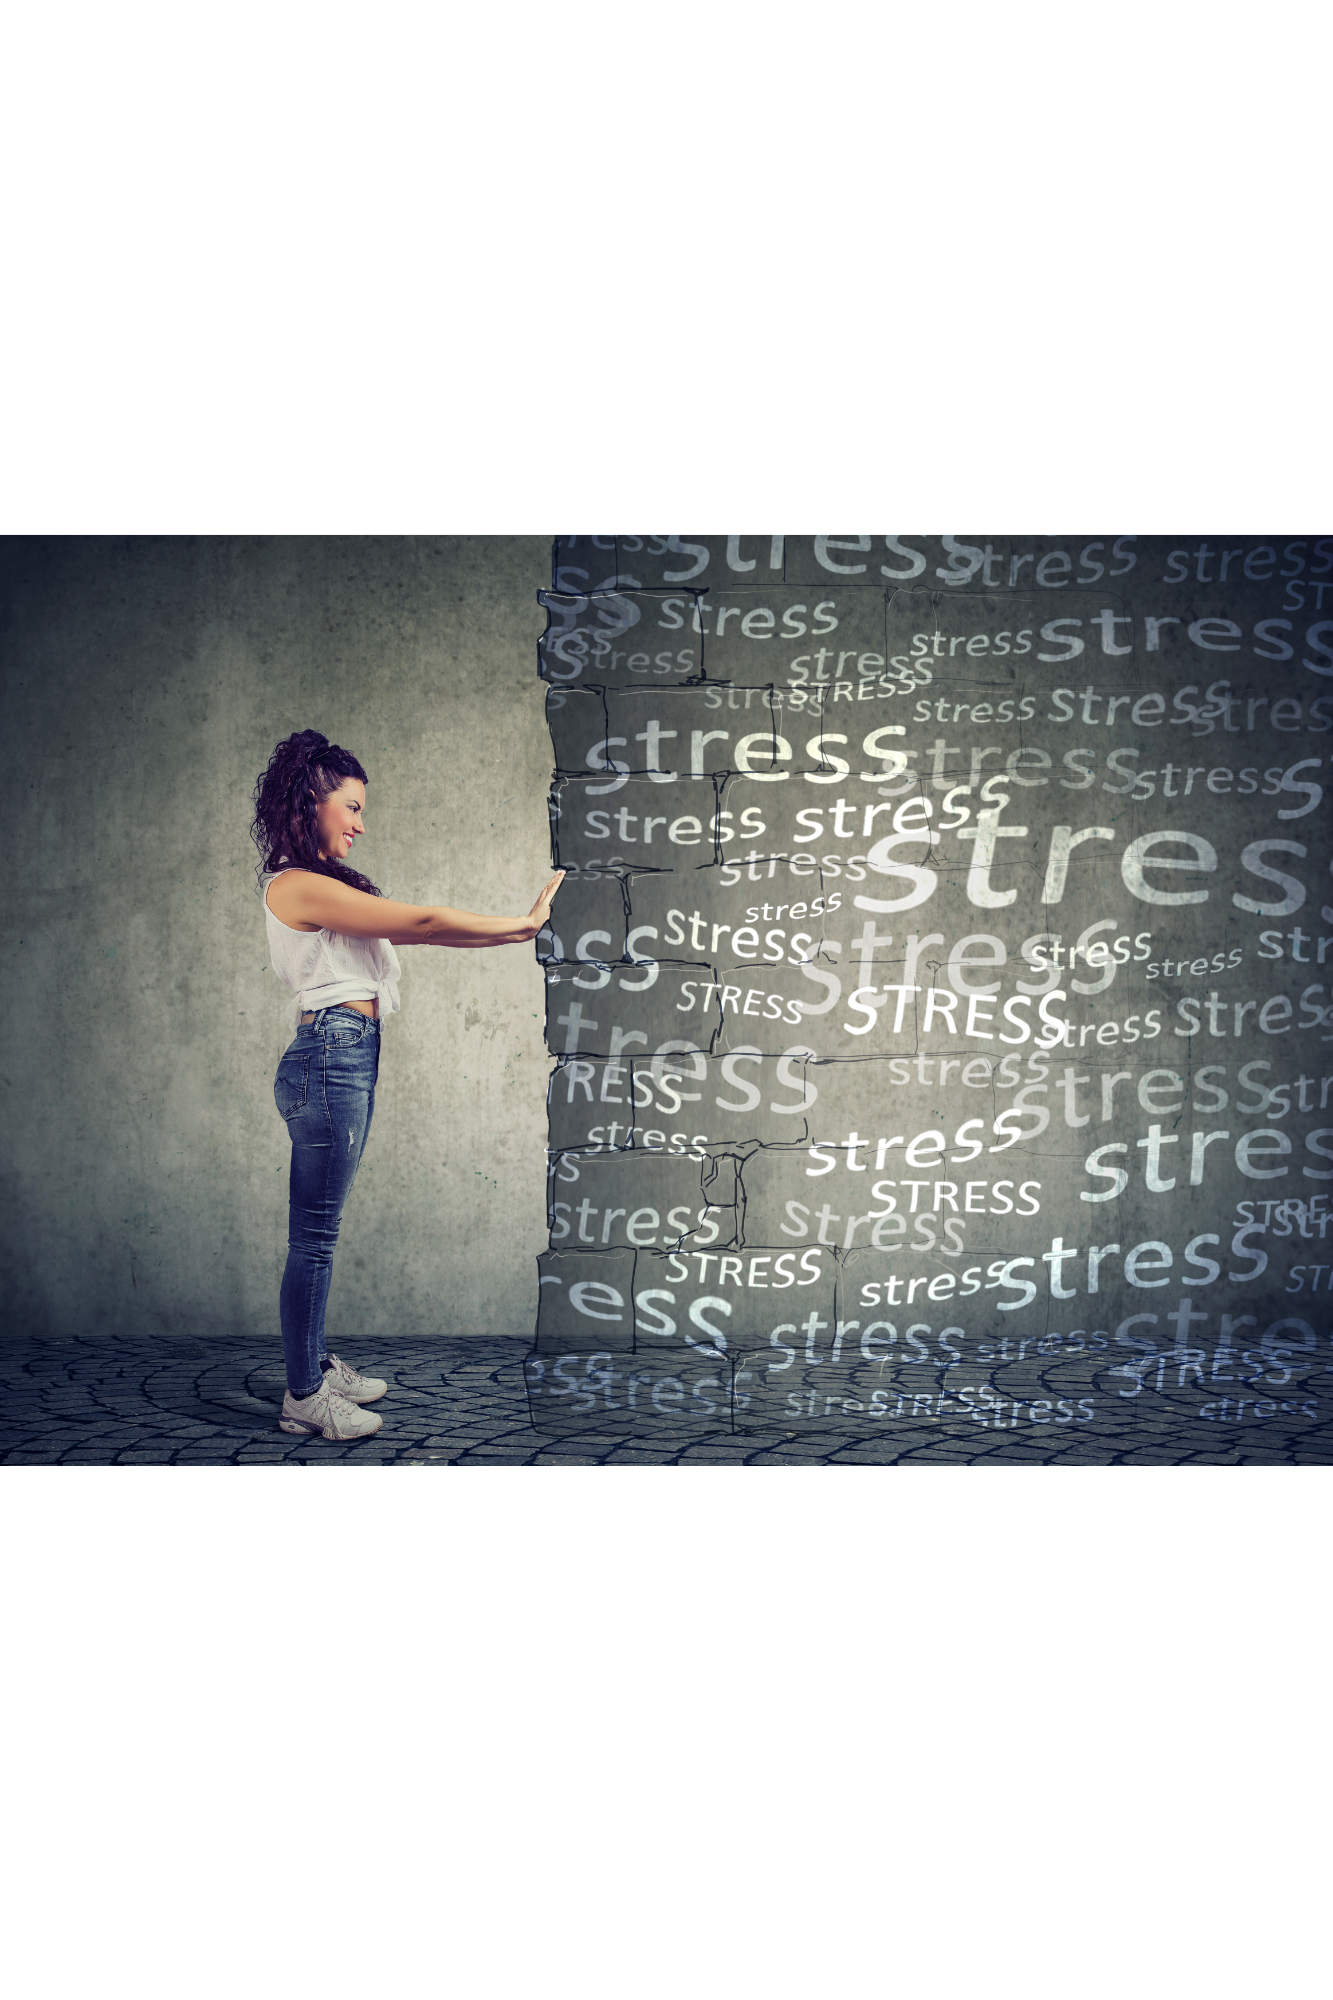 gestion du stress et des émotions